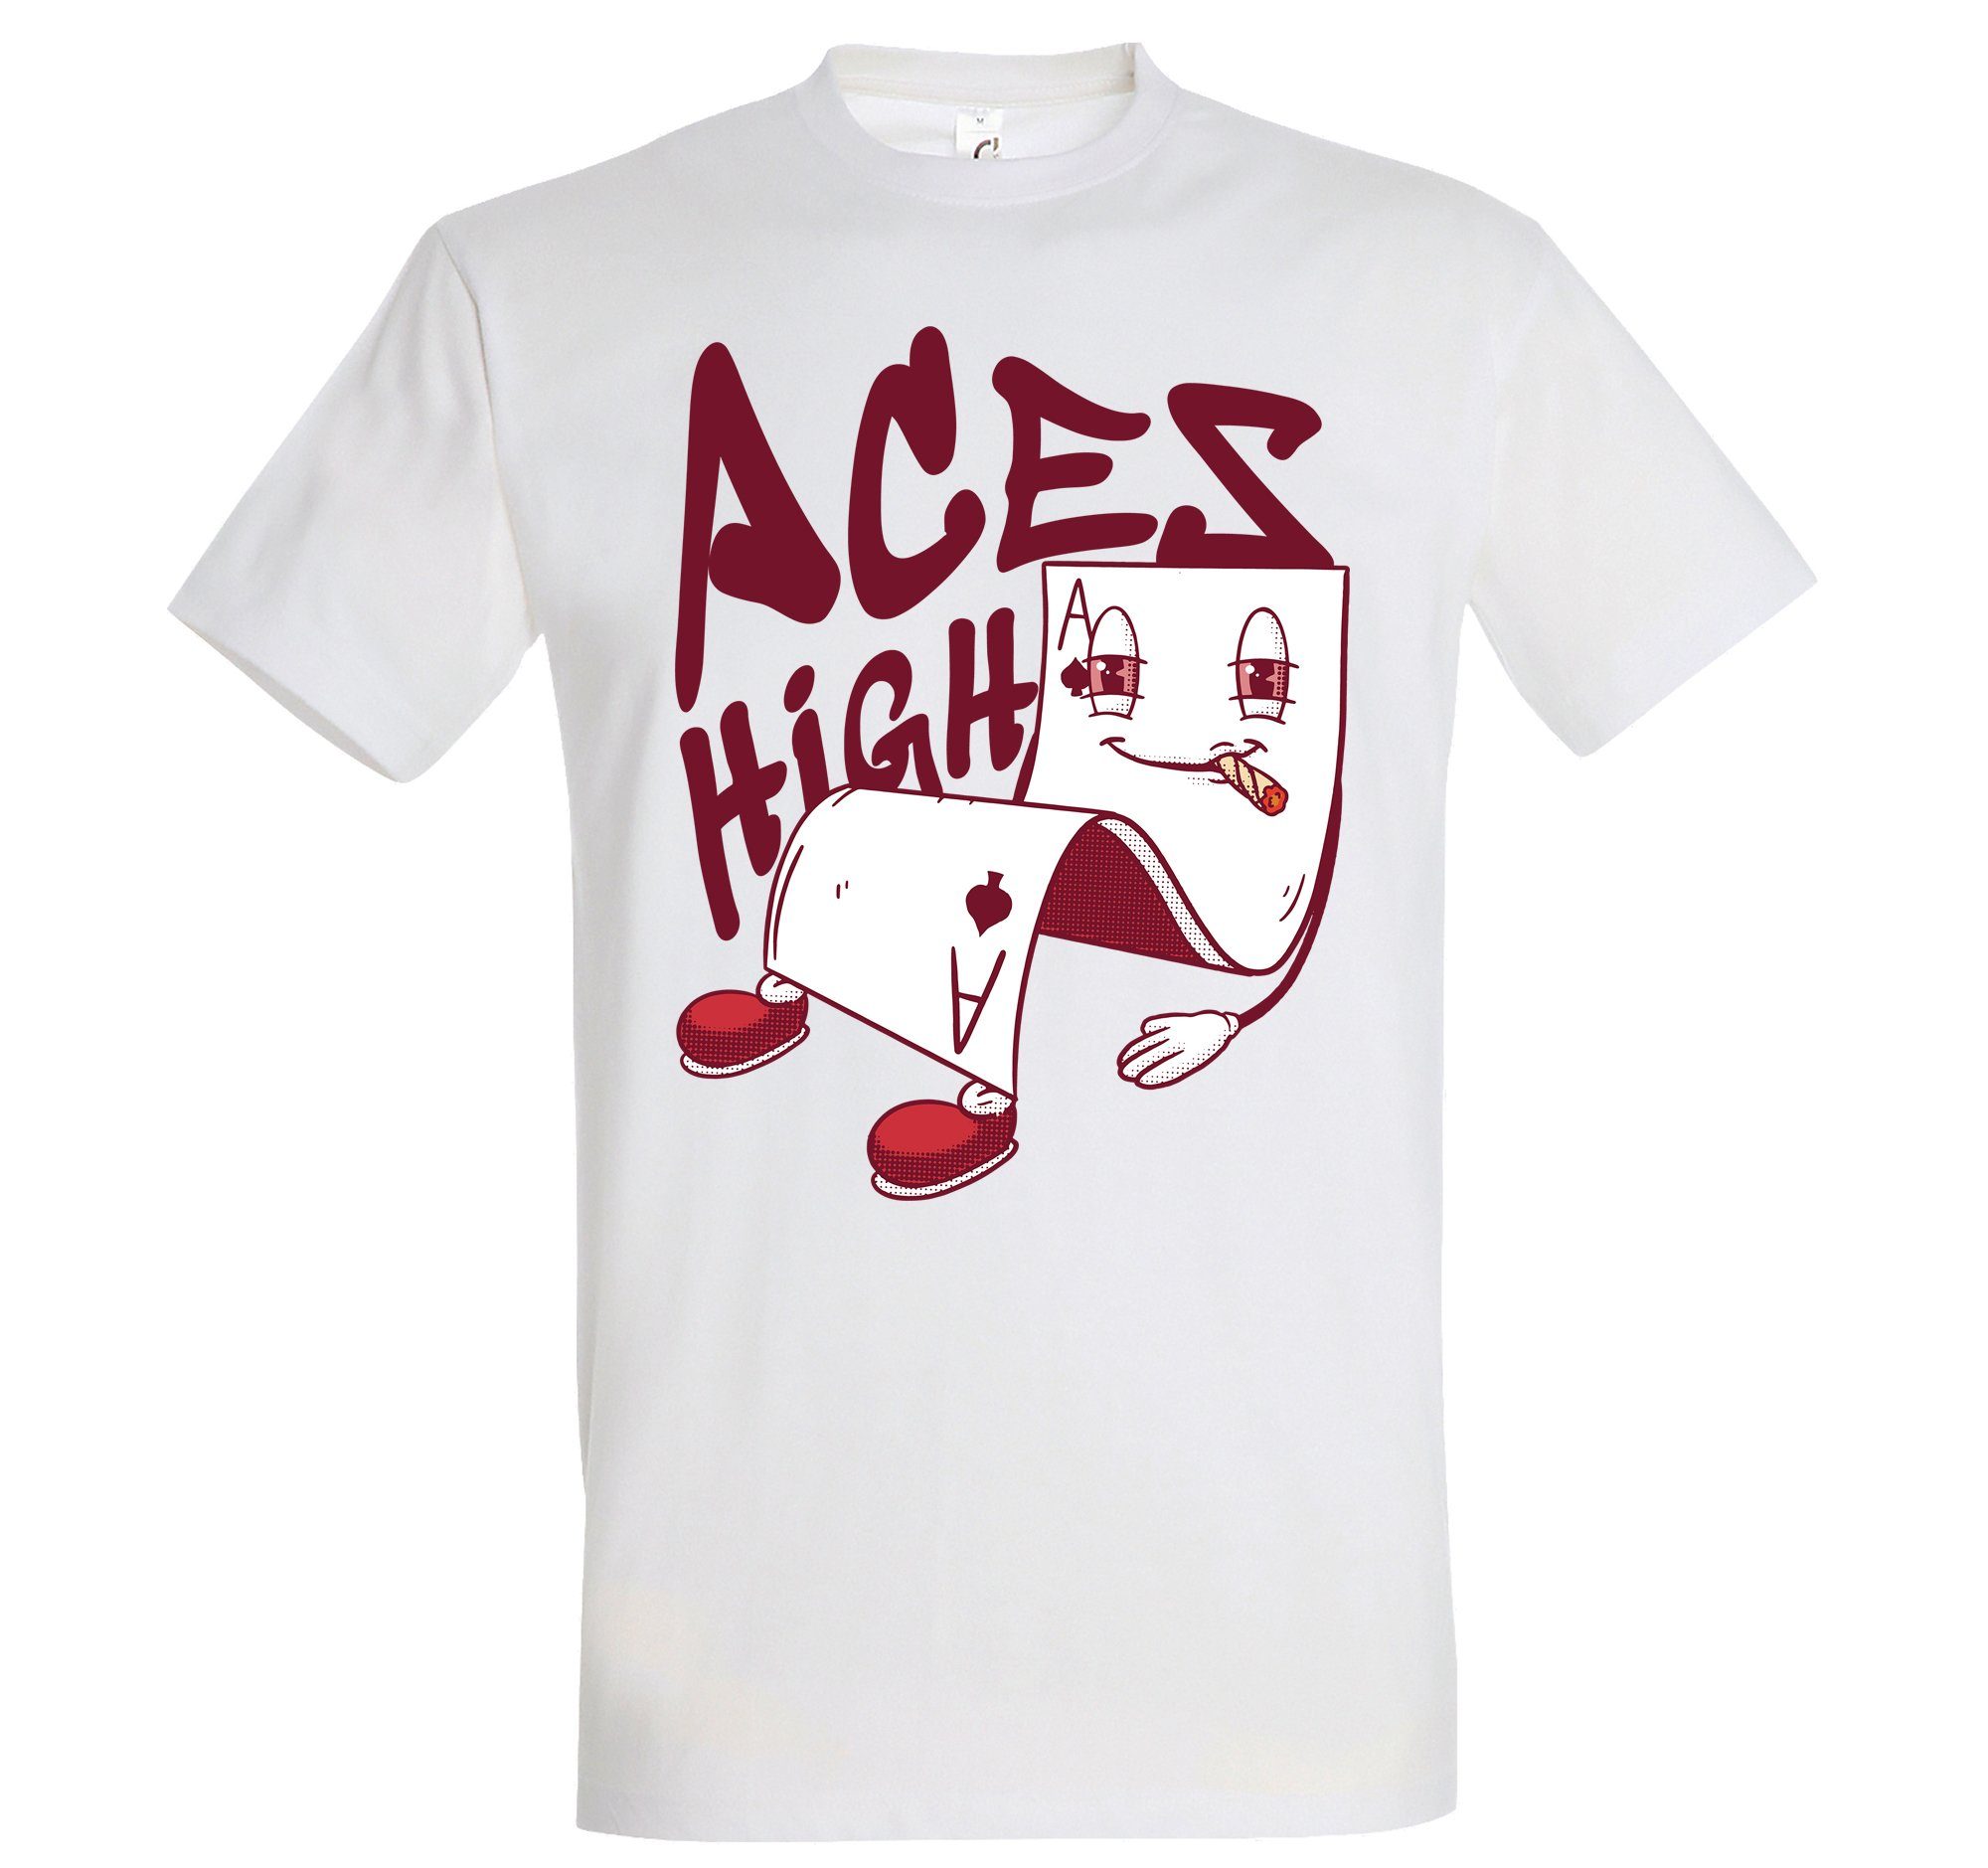 Youth Designz T-Shirt Weiß Herren mit High Shirt Frontprint Aces trendigem